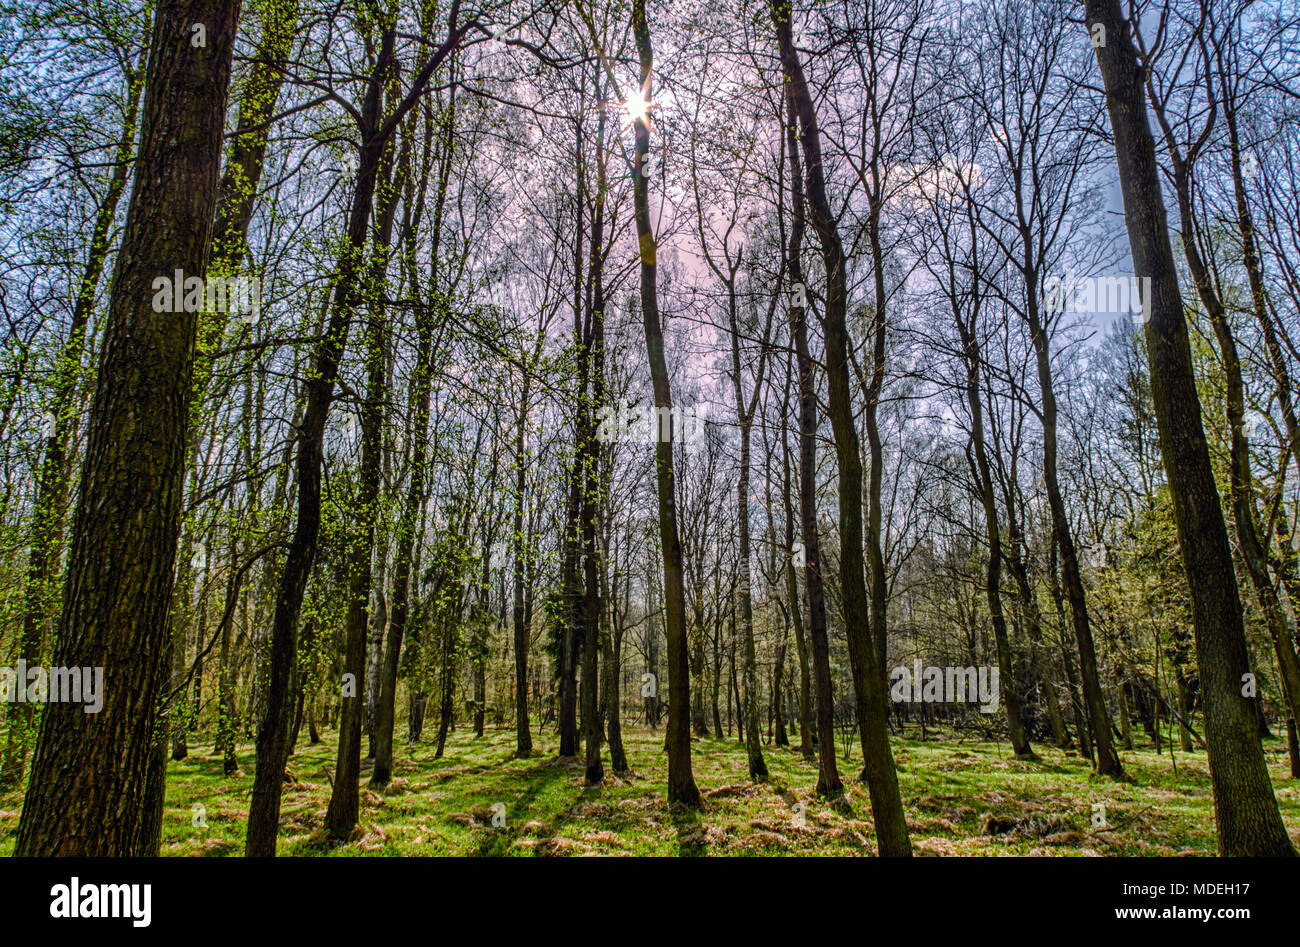 Au début du printemps HDR arbres en forêt. Tourné le soleil direct. Zabrze, hautes terres de Silésie, Pologne. Banque D'Images